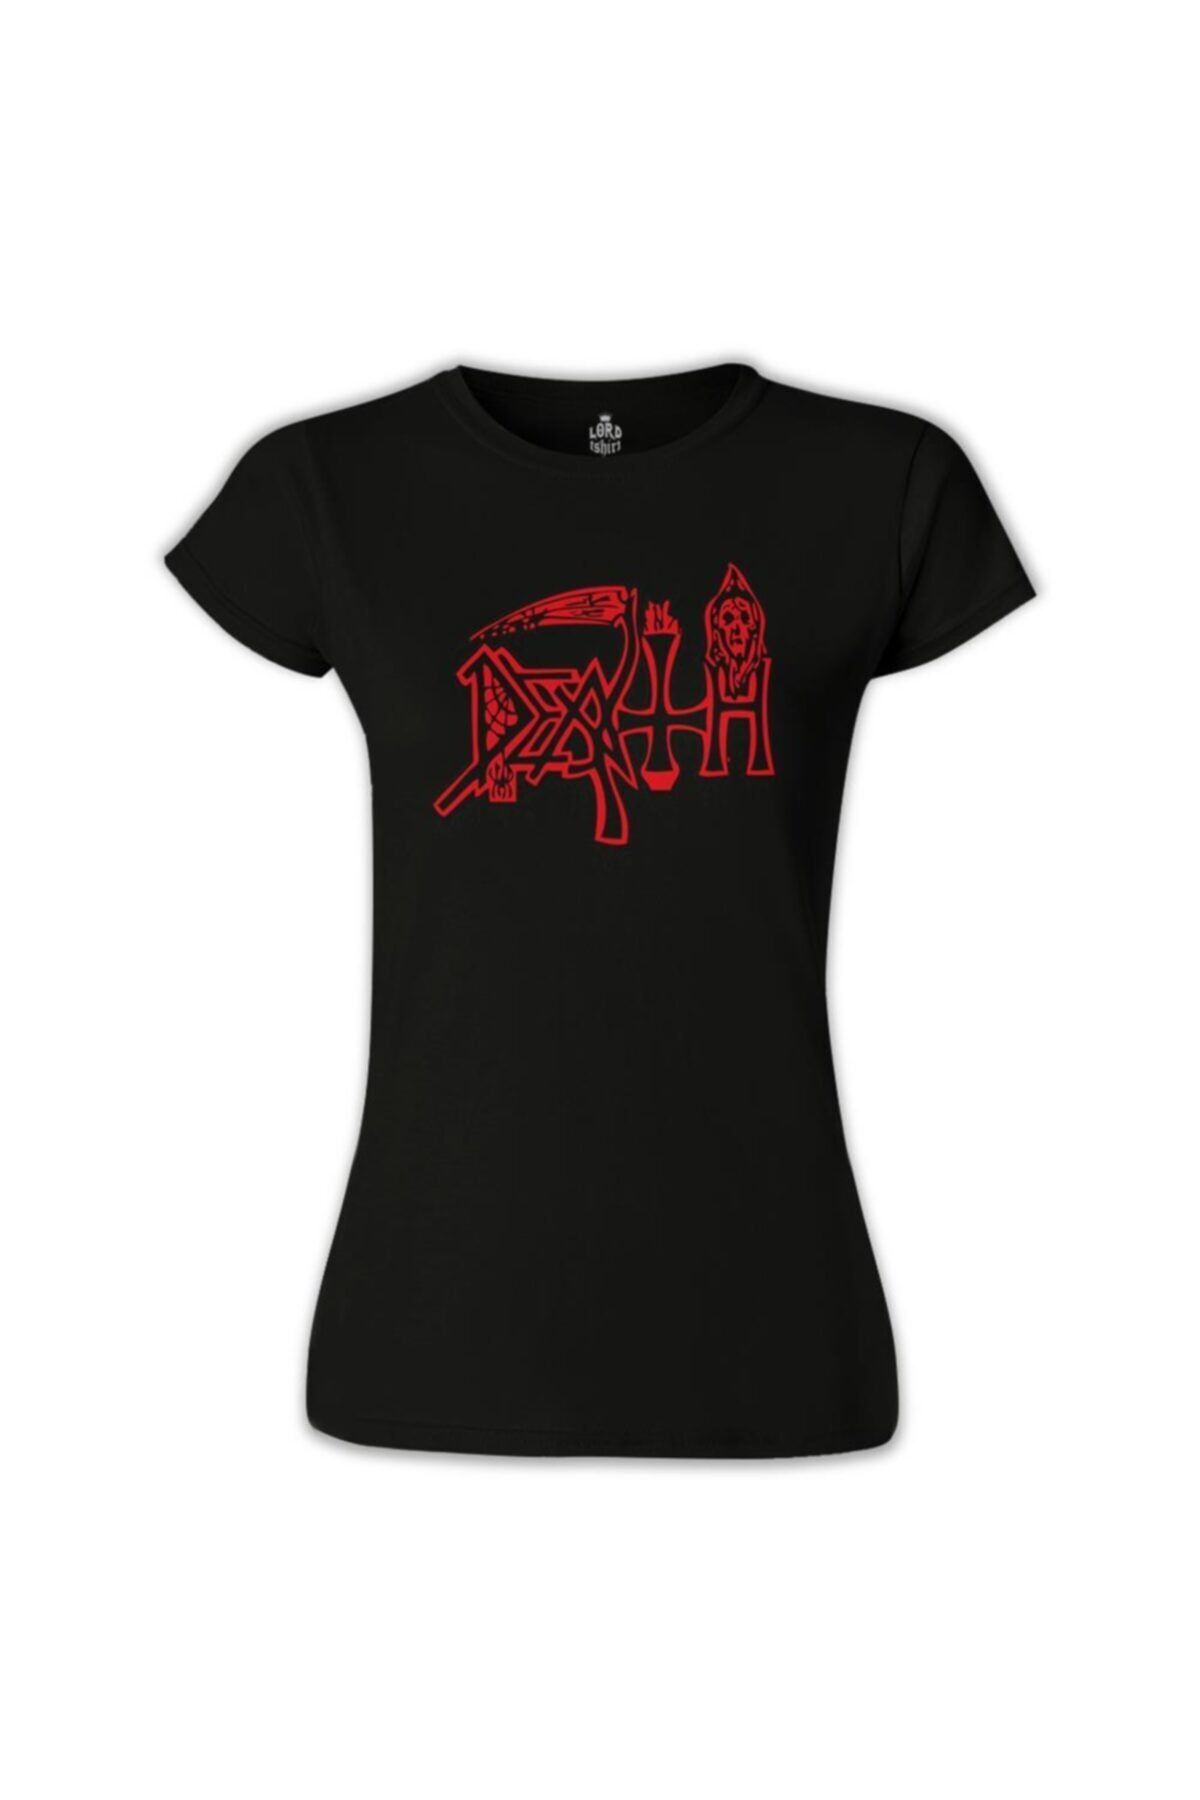 Lord T-Shirt Death - Logo Siyah Bayan Tshirt